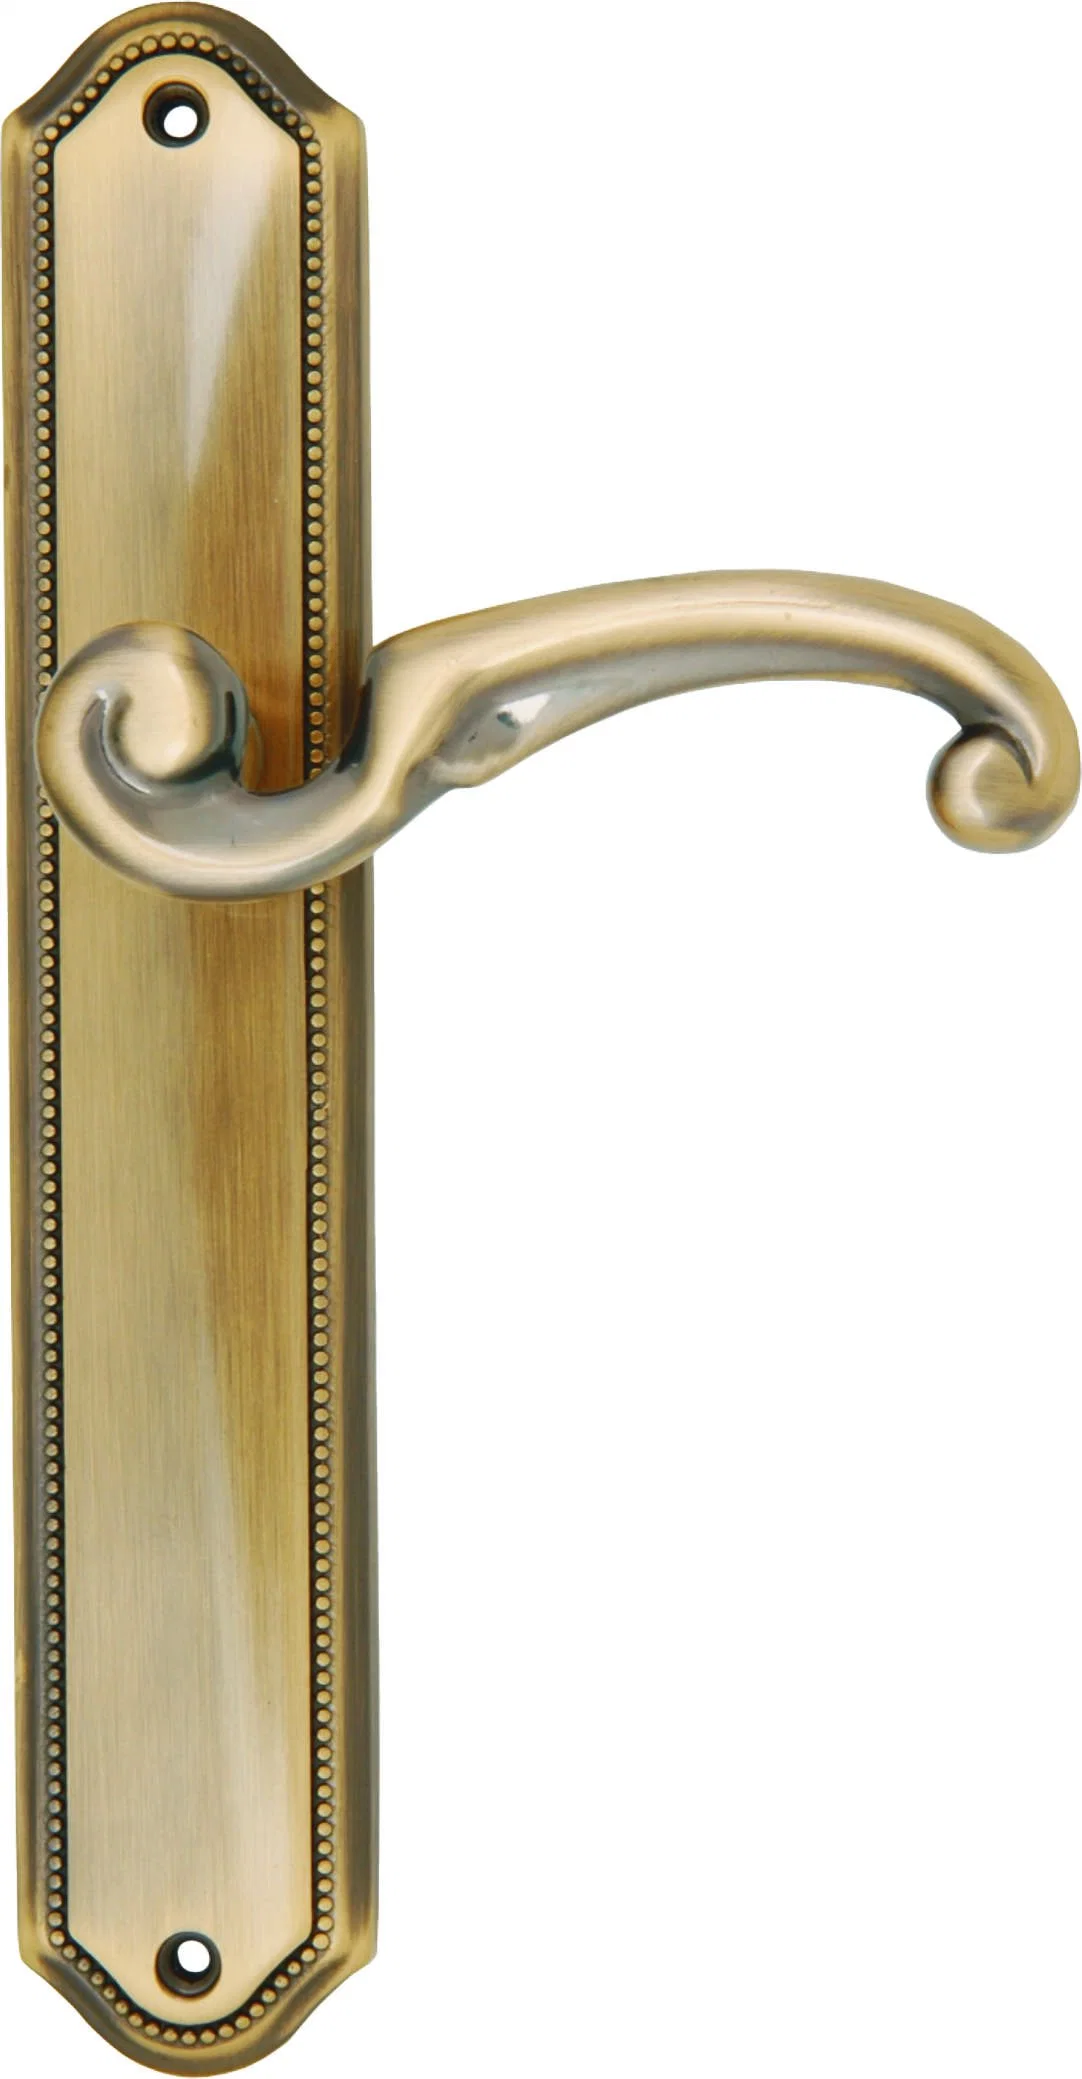 Brass Door Lock Door handle Furniture Hardware